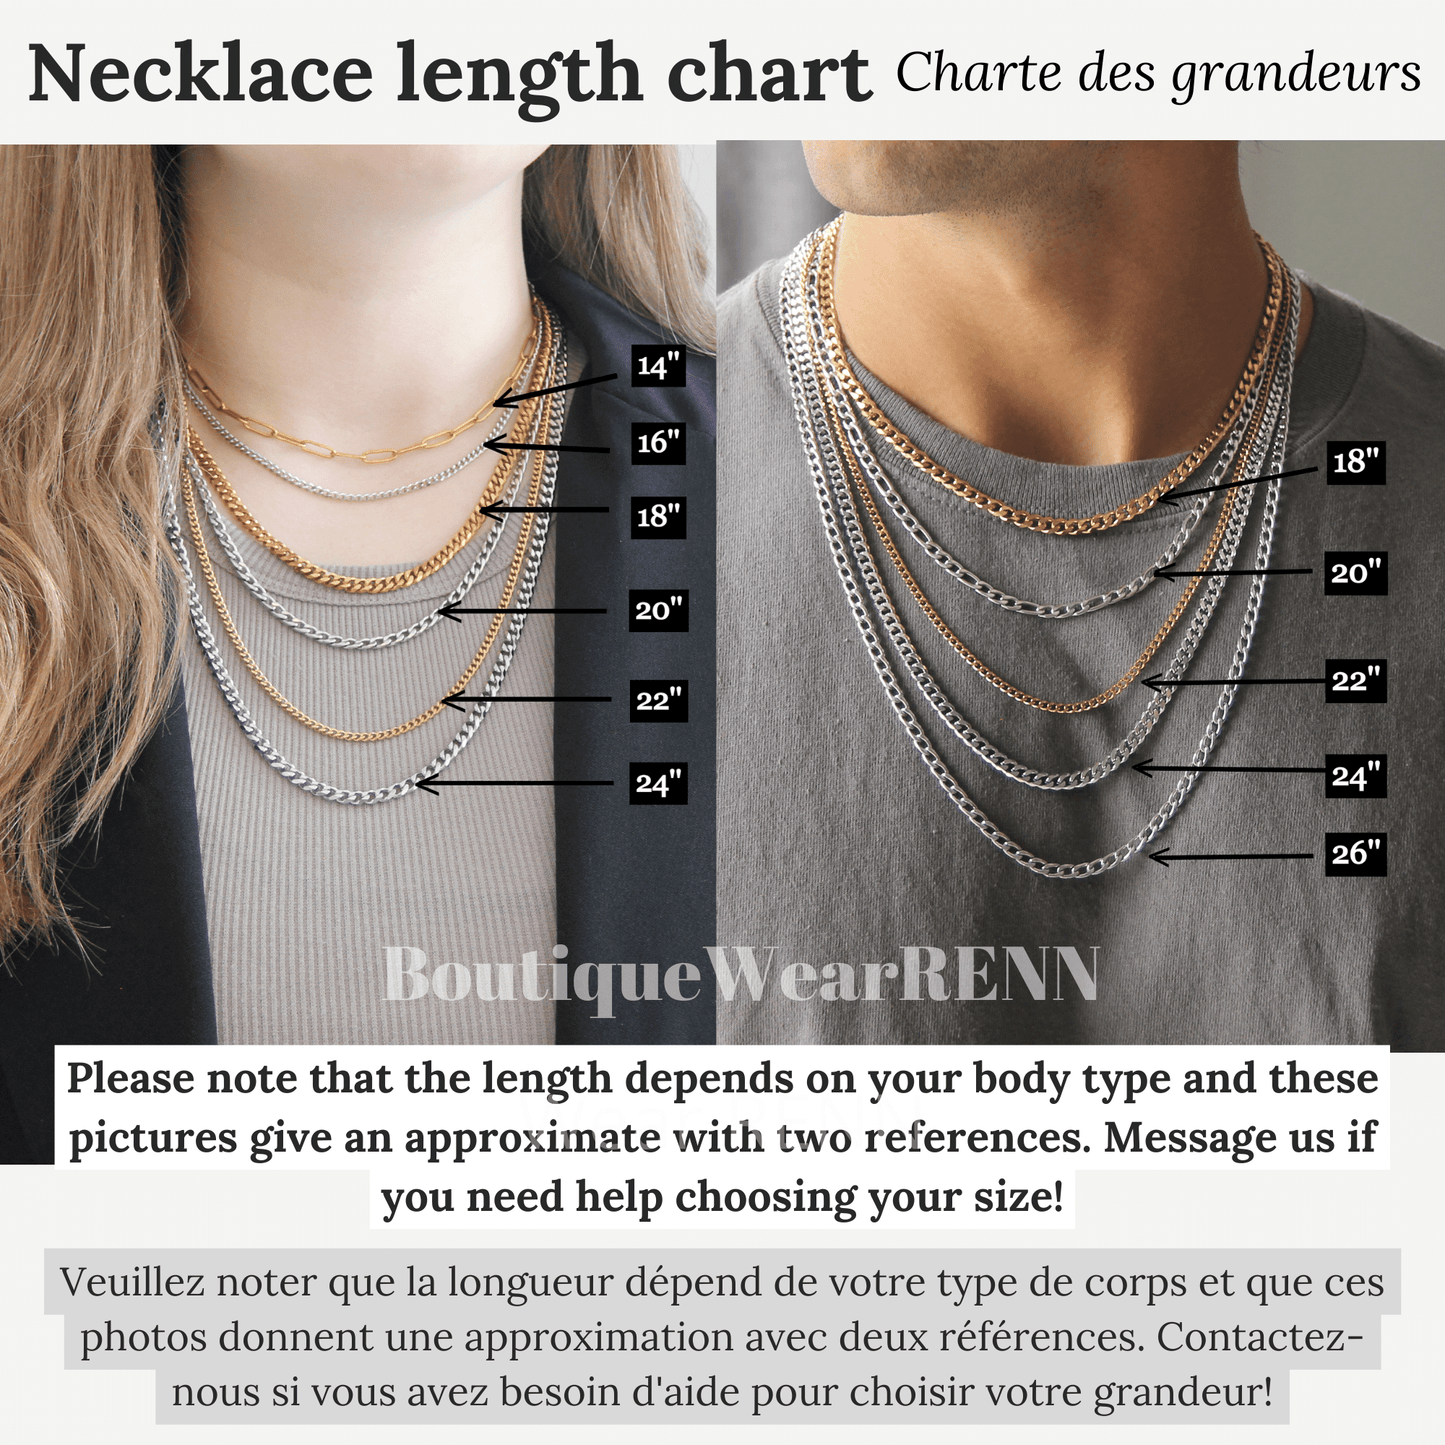 Necklace Size Length Chart - Boutique Wear RENN